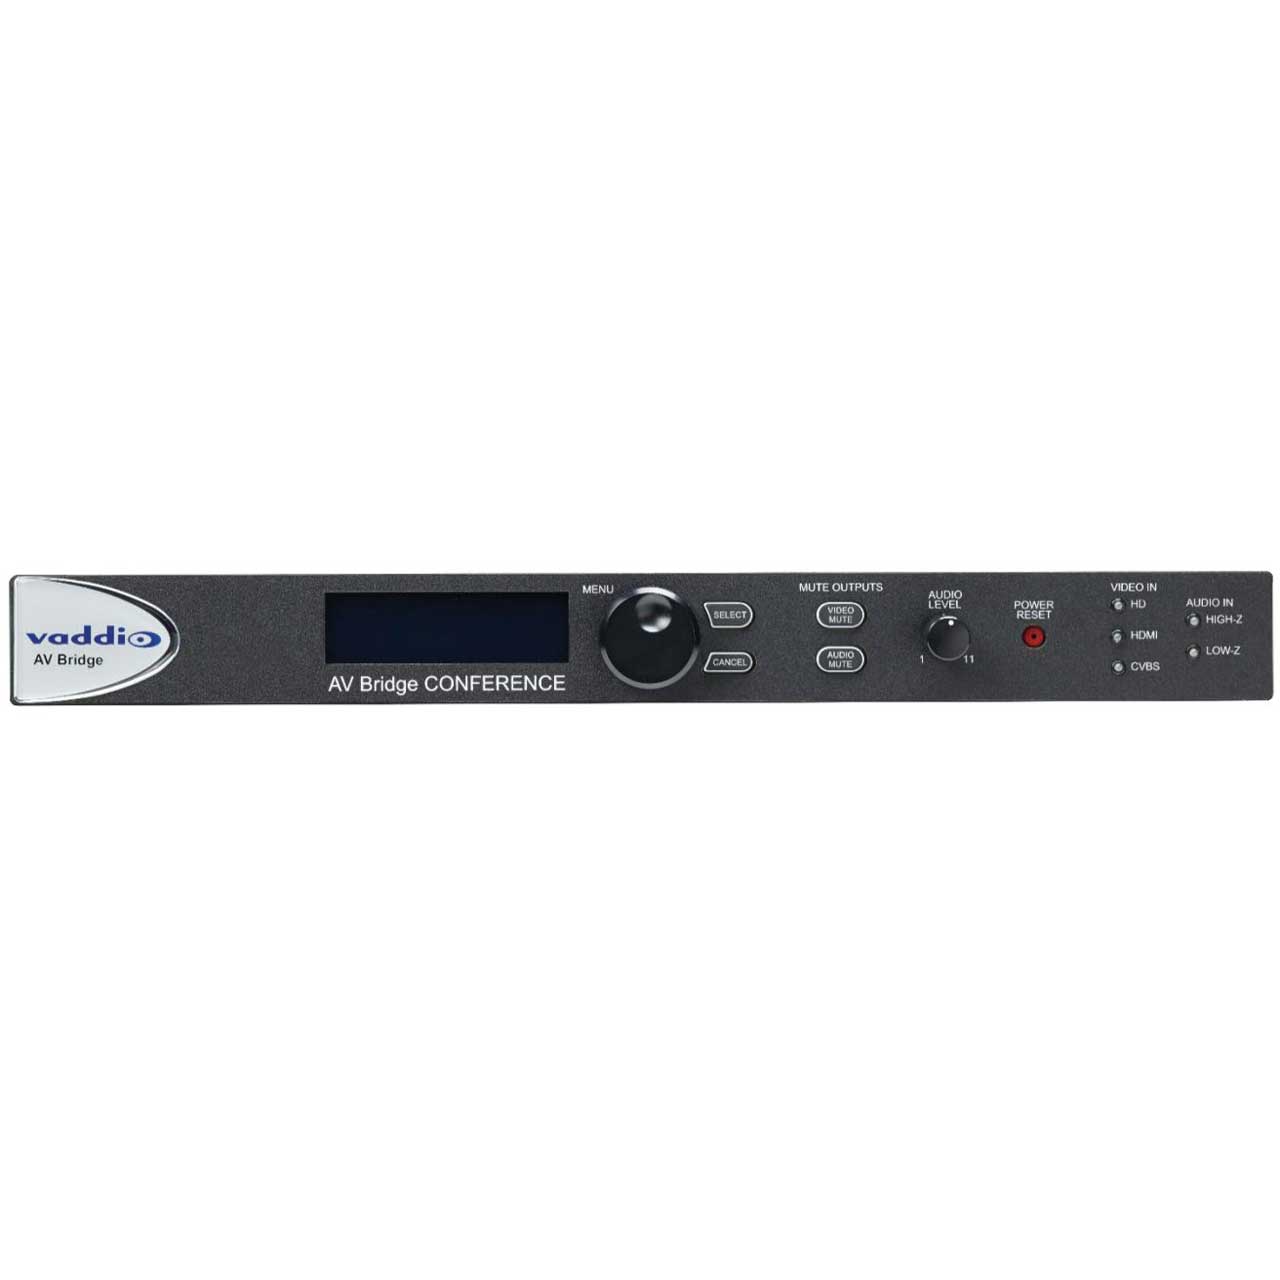 Vaddio 999-8215-000 AV Bridge CONFERENCE HD Encoder for Media Streaming via IP or USB VAD-999-8215-000